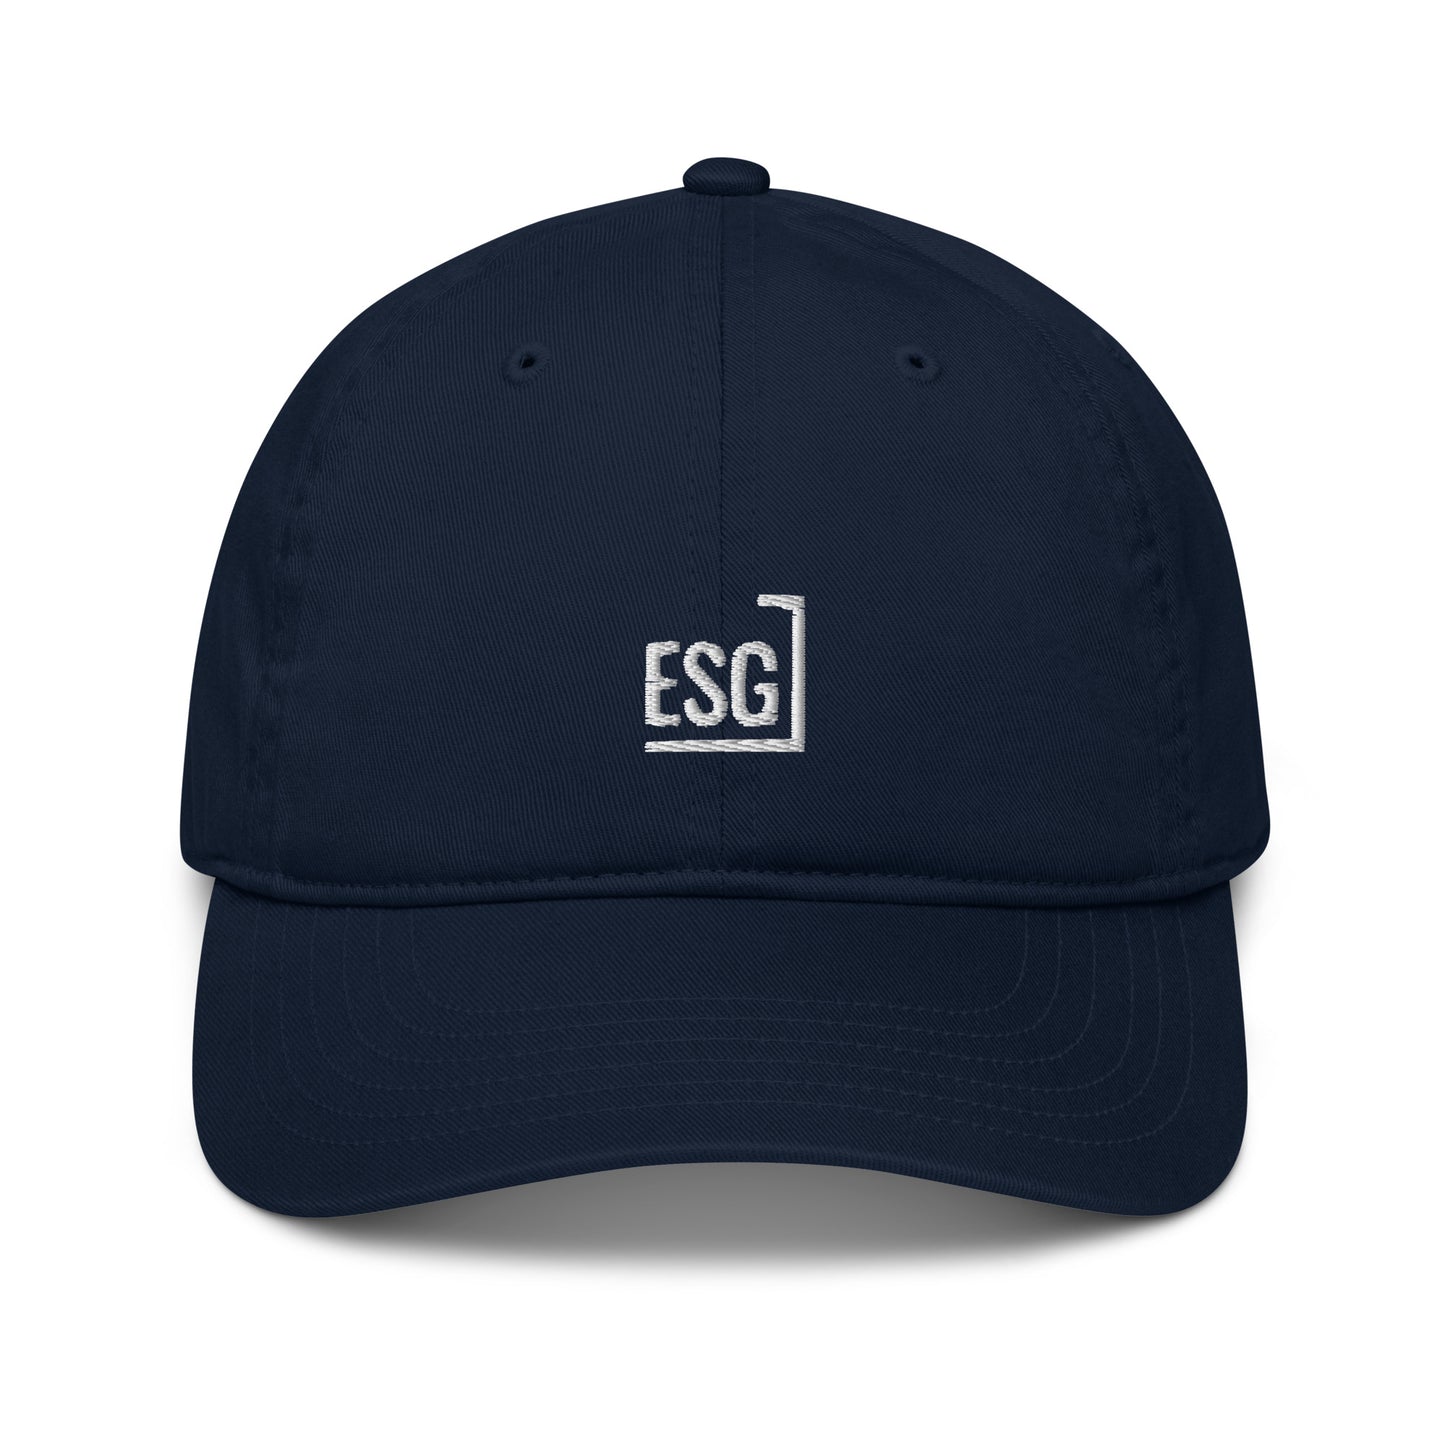 ESG hat